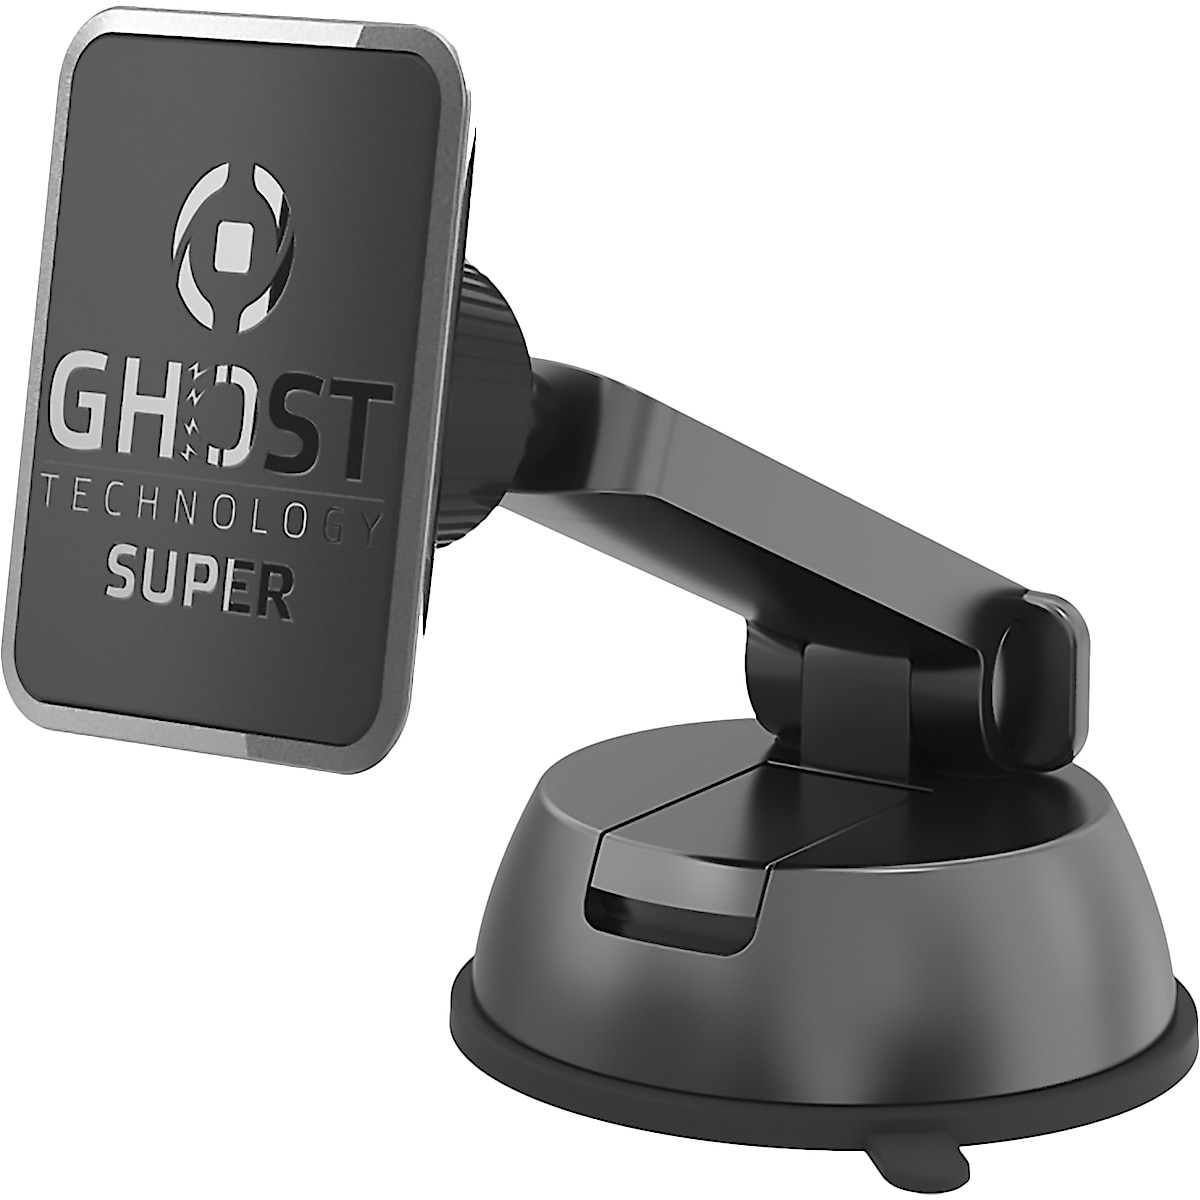 Celly Ghost Superdash, mobilholder med teleskop